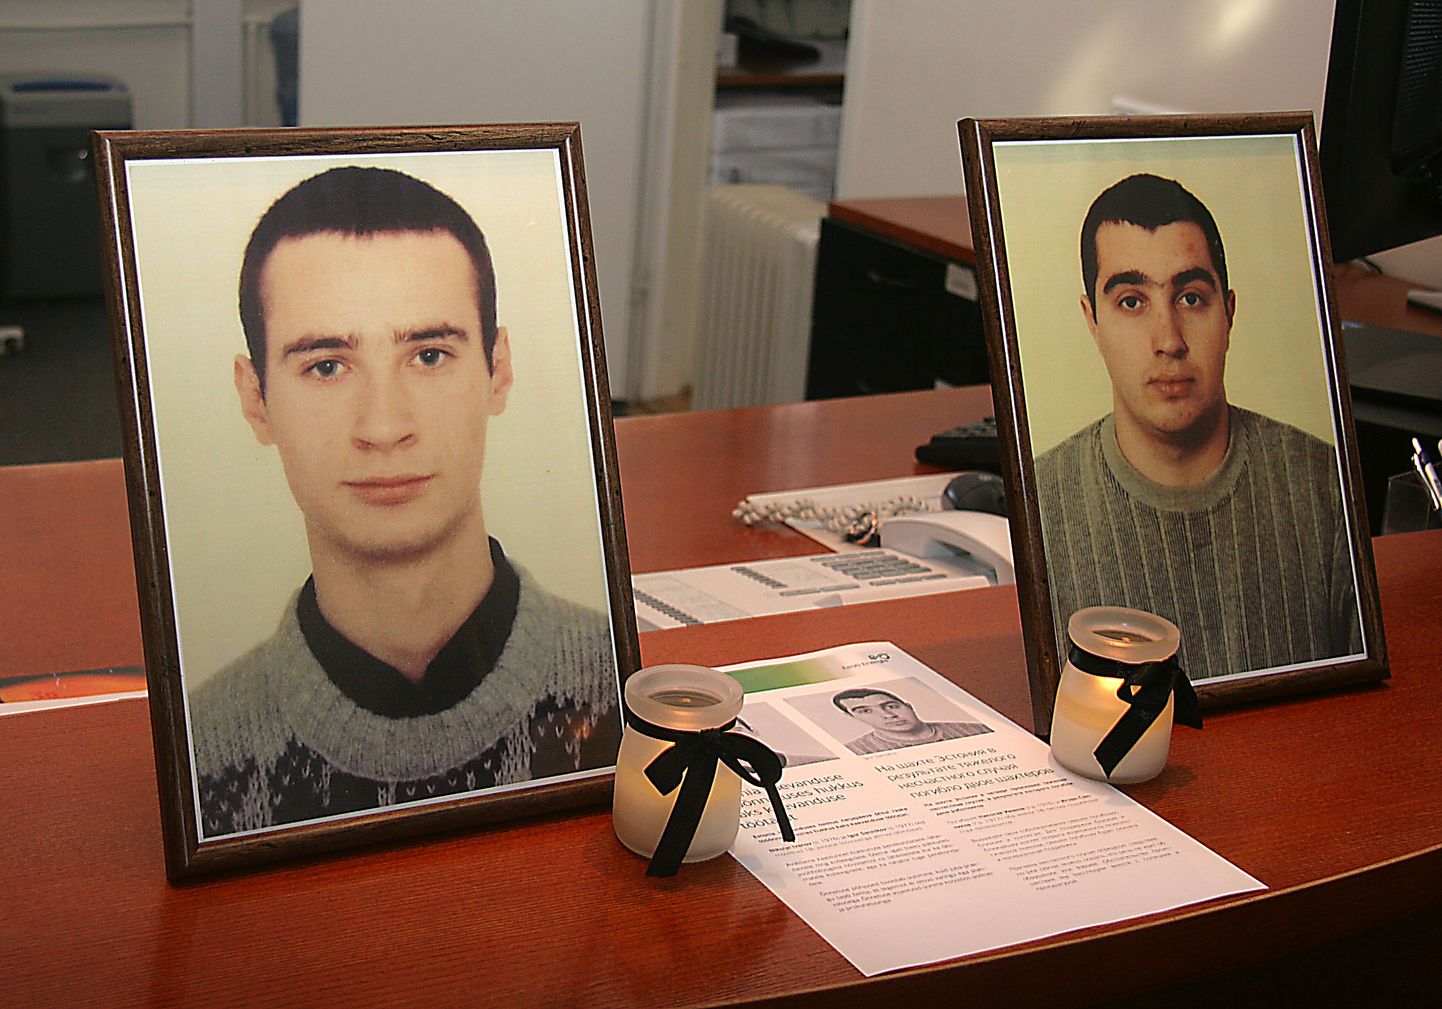 Николай Иванов и Игорь Санников погибли, по мнению суда, по не установленным до сих пор точно причинам, и суды нашли, что обвинить работодателя в несчастном случае нельзя.